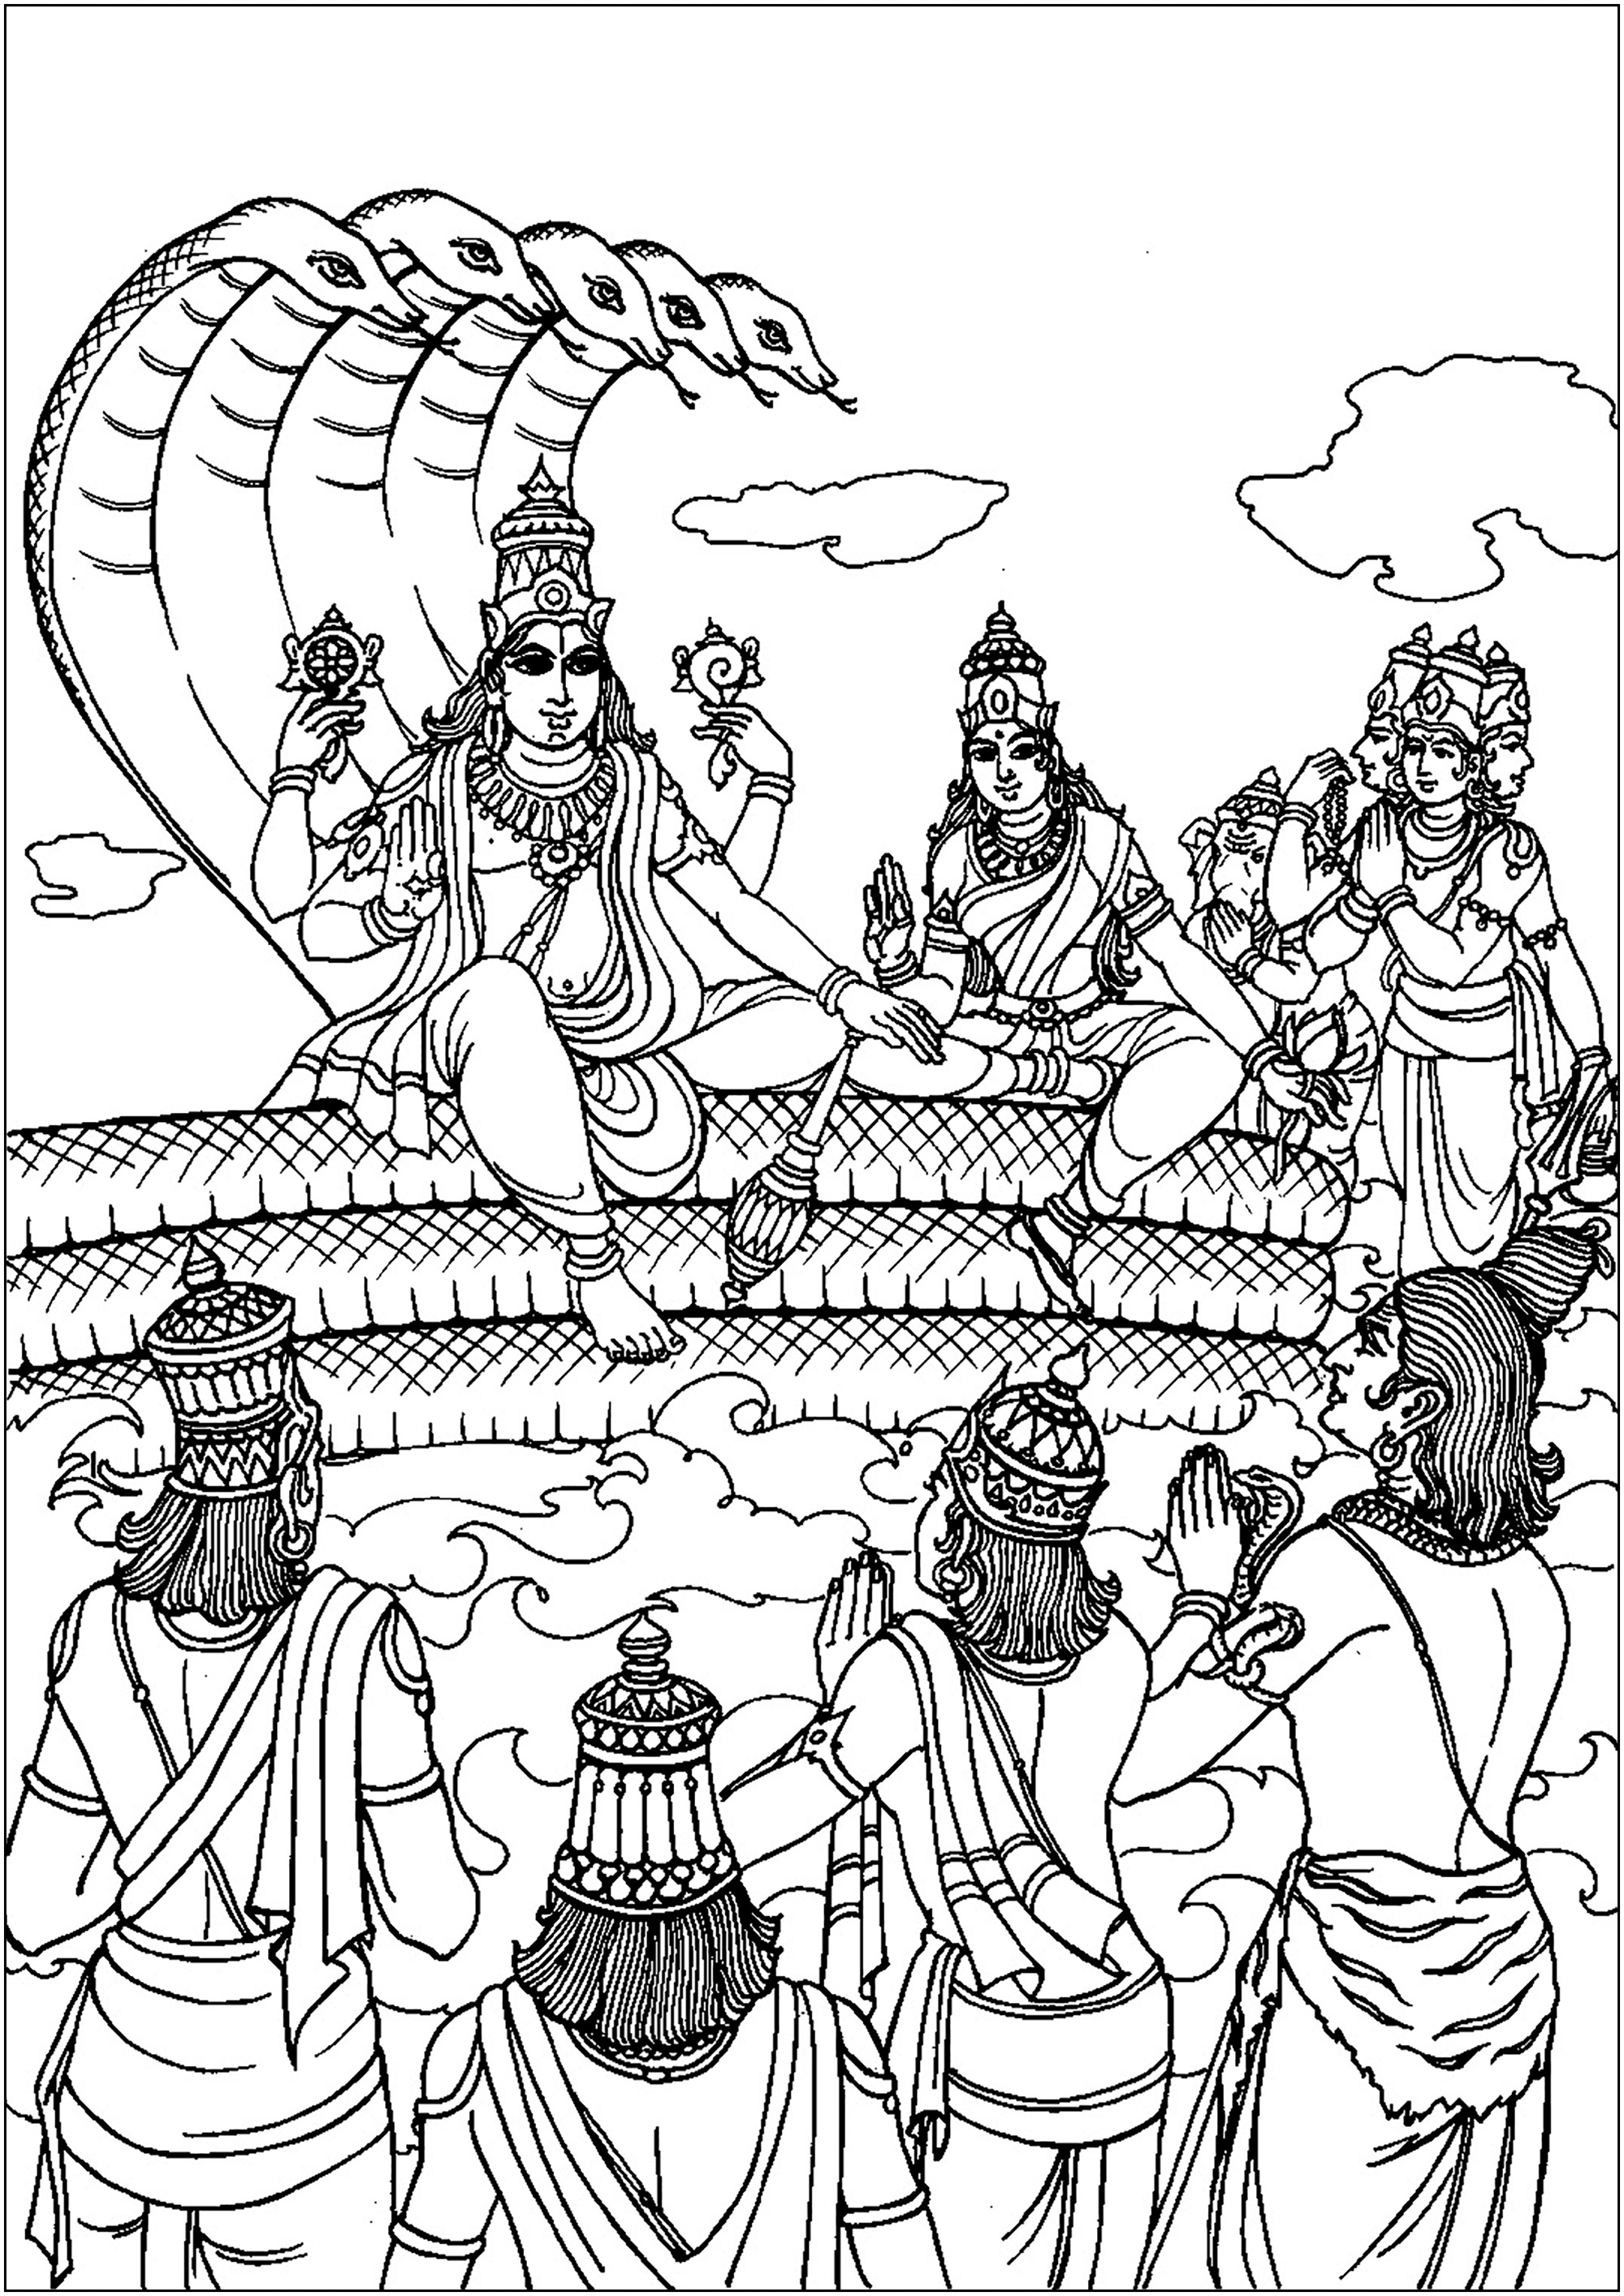 Vishnu que assume a forma humana : Rama, para visitar os homens. Vishnu é uma das principais divindades do hinduísmo, considerado o preservador do universo.É muitas vezes representado pousado sobre a serpente divina, Ananta Shesha, com quatro braços que seguram símbolos sagrados. Vishnu personifica a benevolência e intervém periodicamente no mundo sob diferentes avatares (encarnações) para restabelecer a ordem cósmica e proteger a virtude.